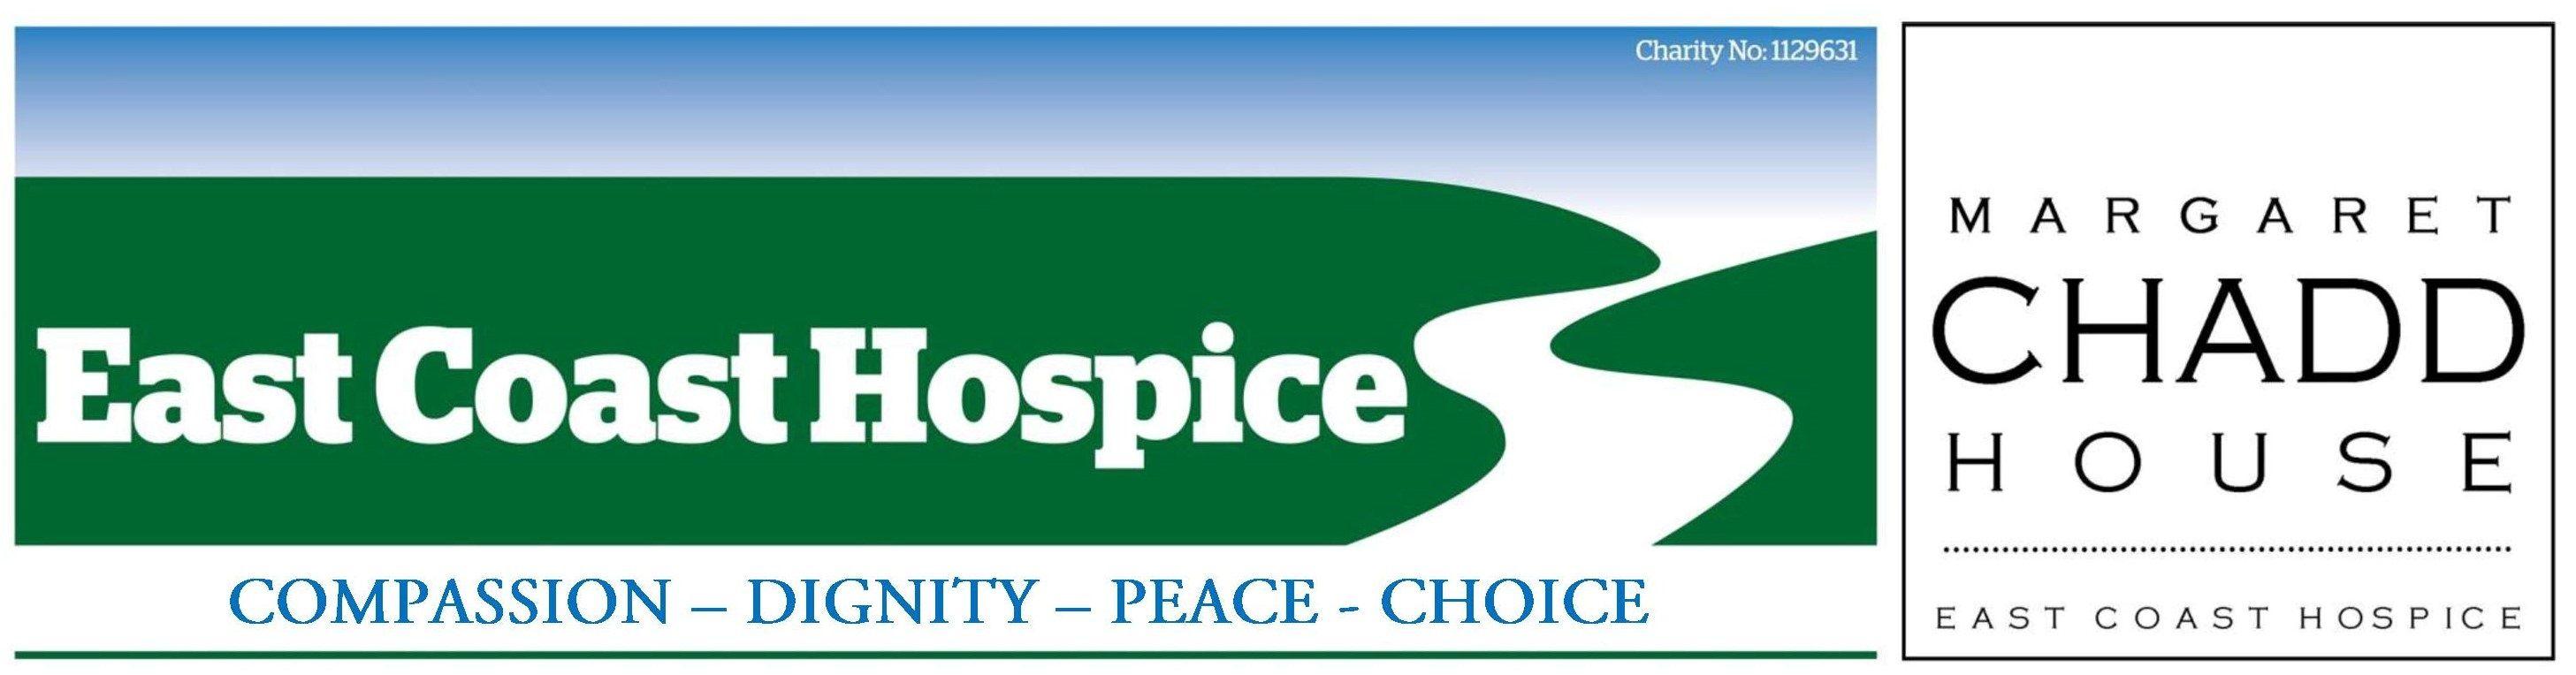 East Coast Green Logo - East Coast Hospice Skyive Challenge 2019